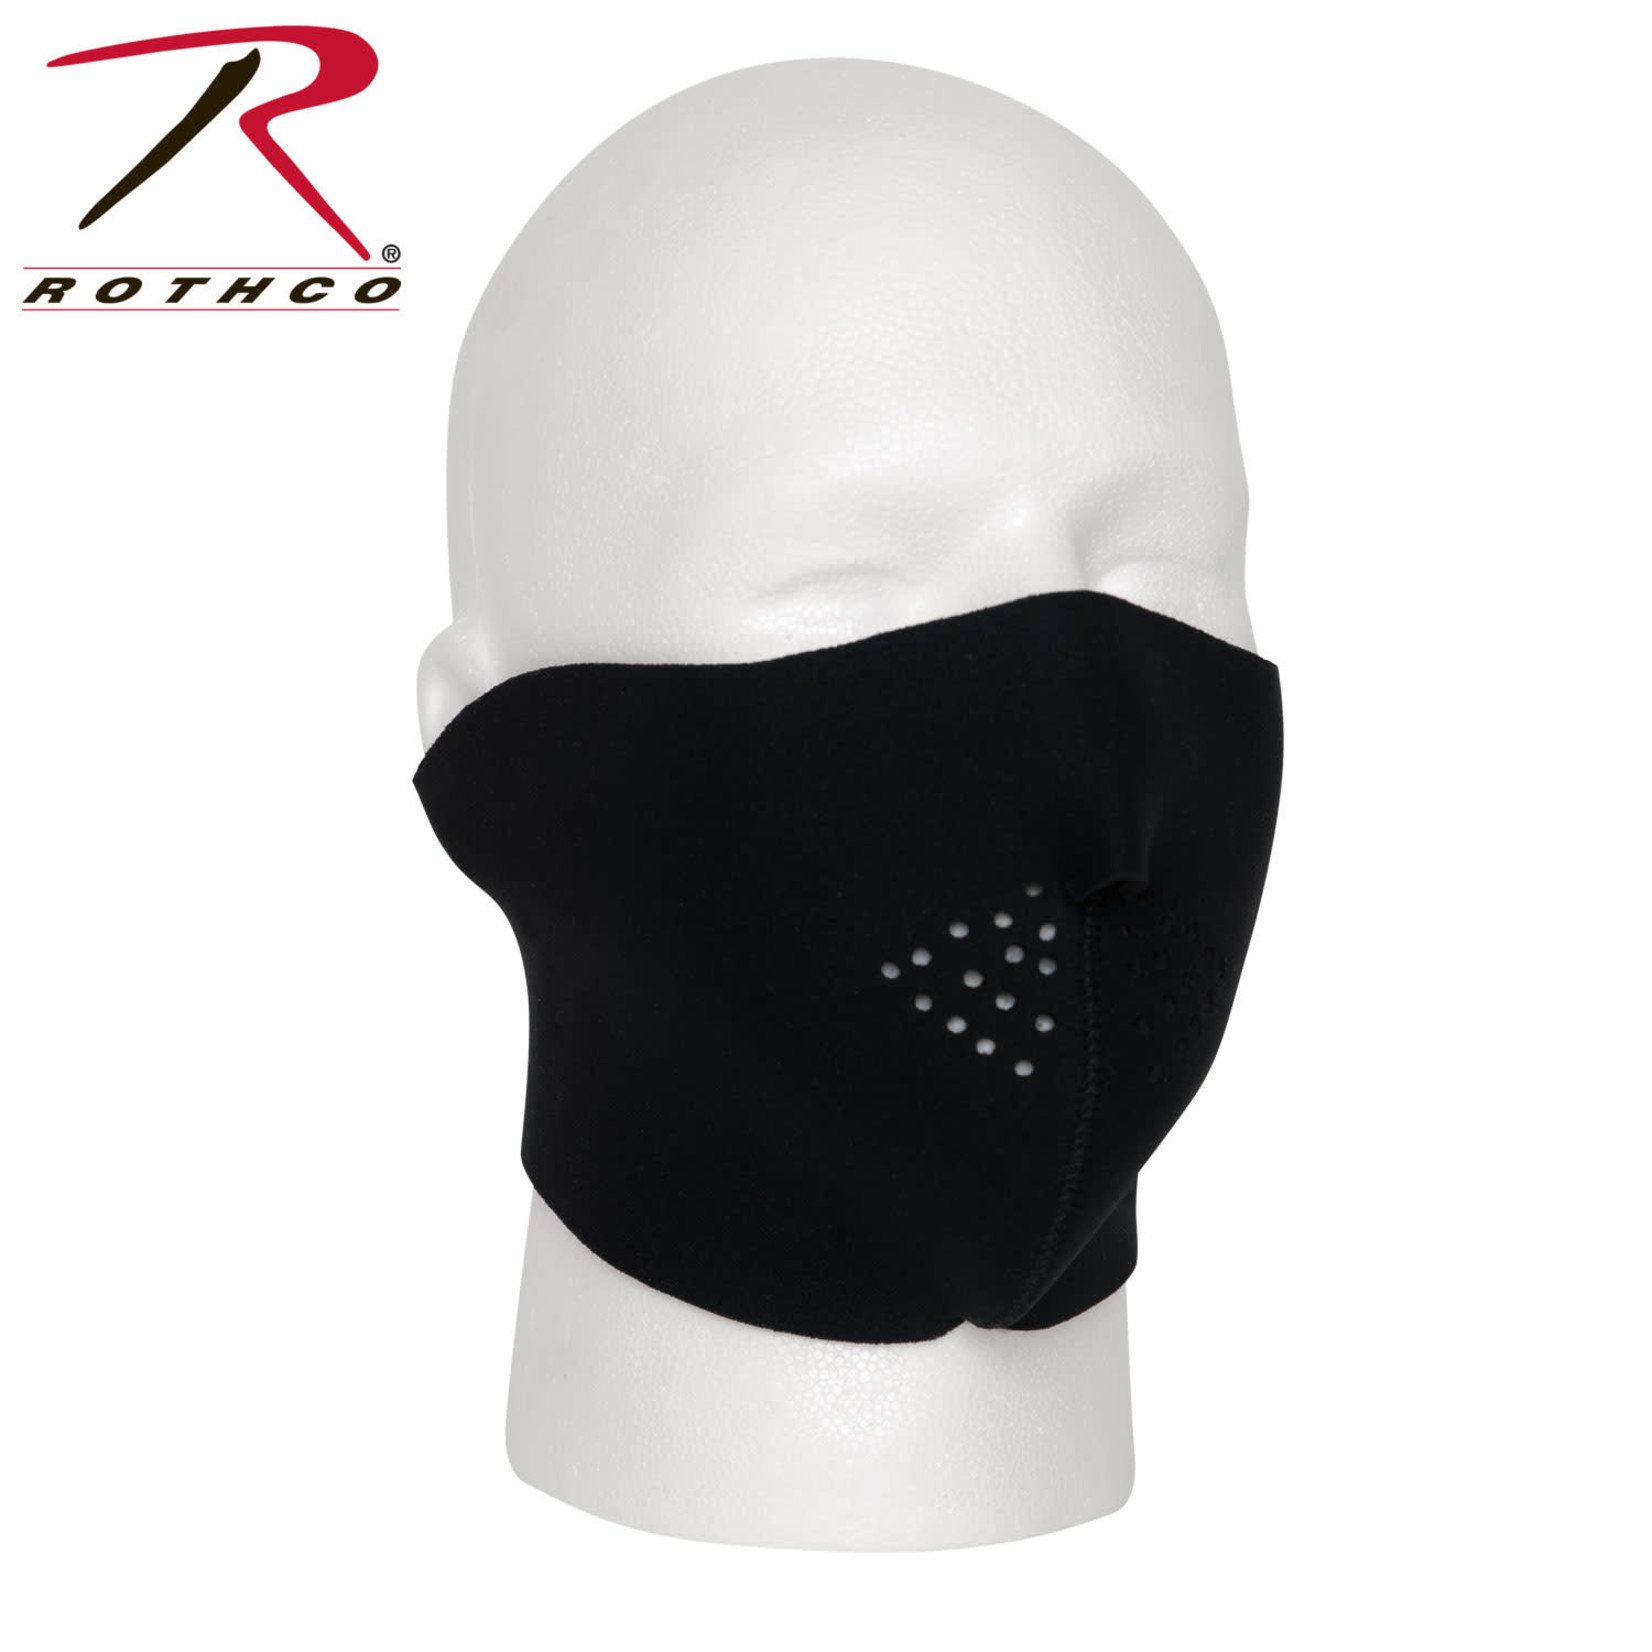 Rothco Rothco Neoprene Half Face Mask